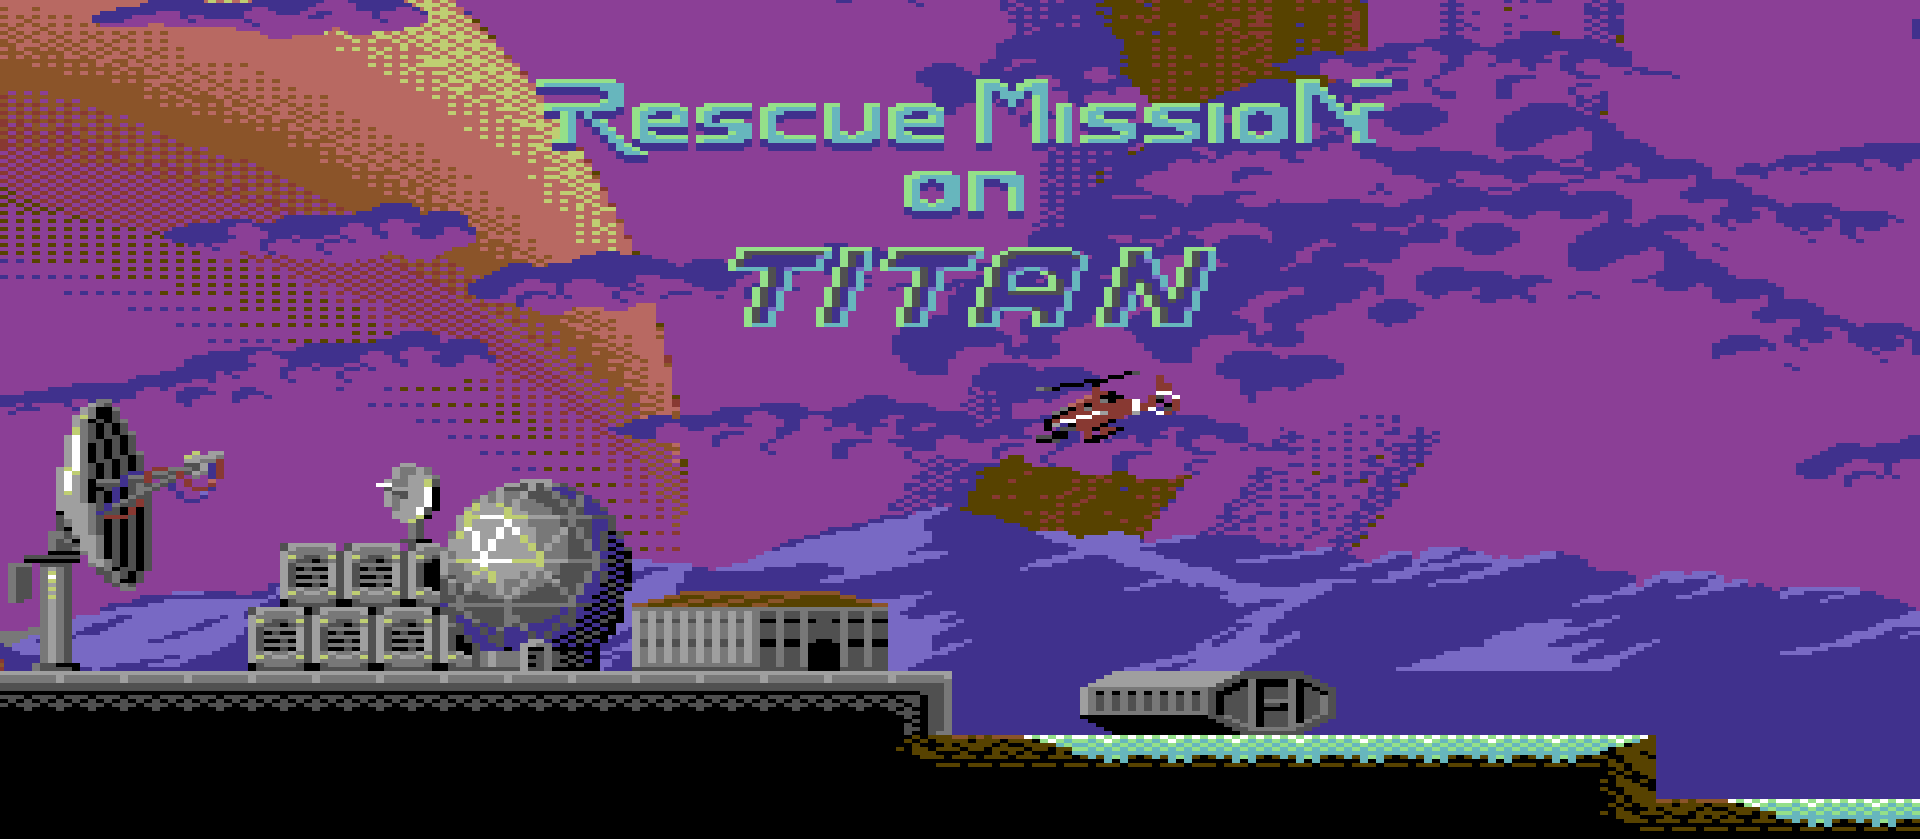 Rescue Mission on Titan